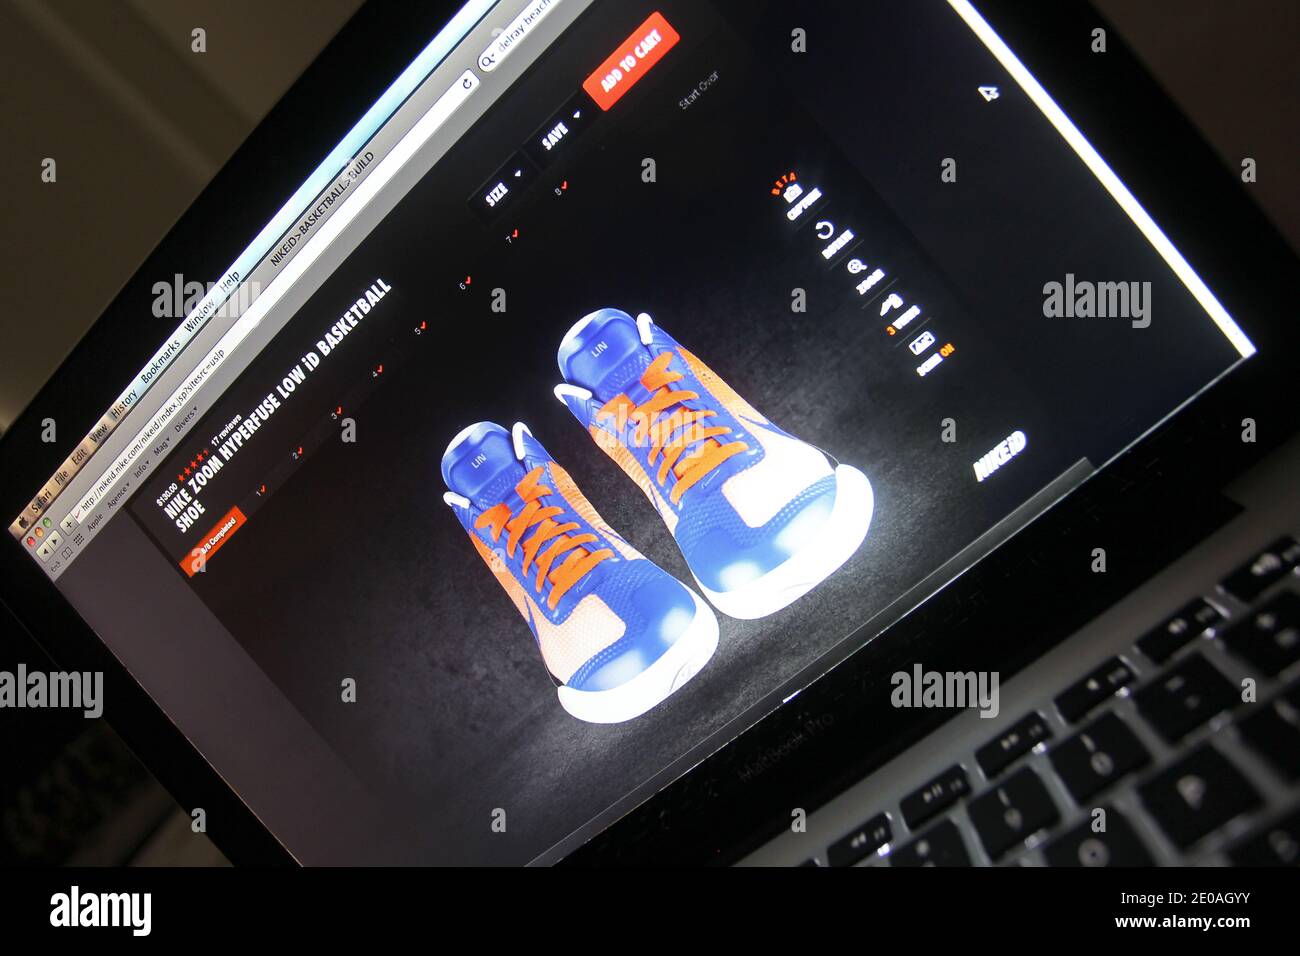 Nike inc. Empieza a vender en su sitio web las zapatillas de baloncesto  Nike Zoom Hyperfuse Low, diseñadas especialmente para los neoyorquinos  Jeremy Lin durante el fin de semana en el que